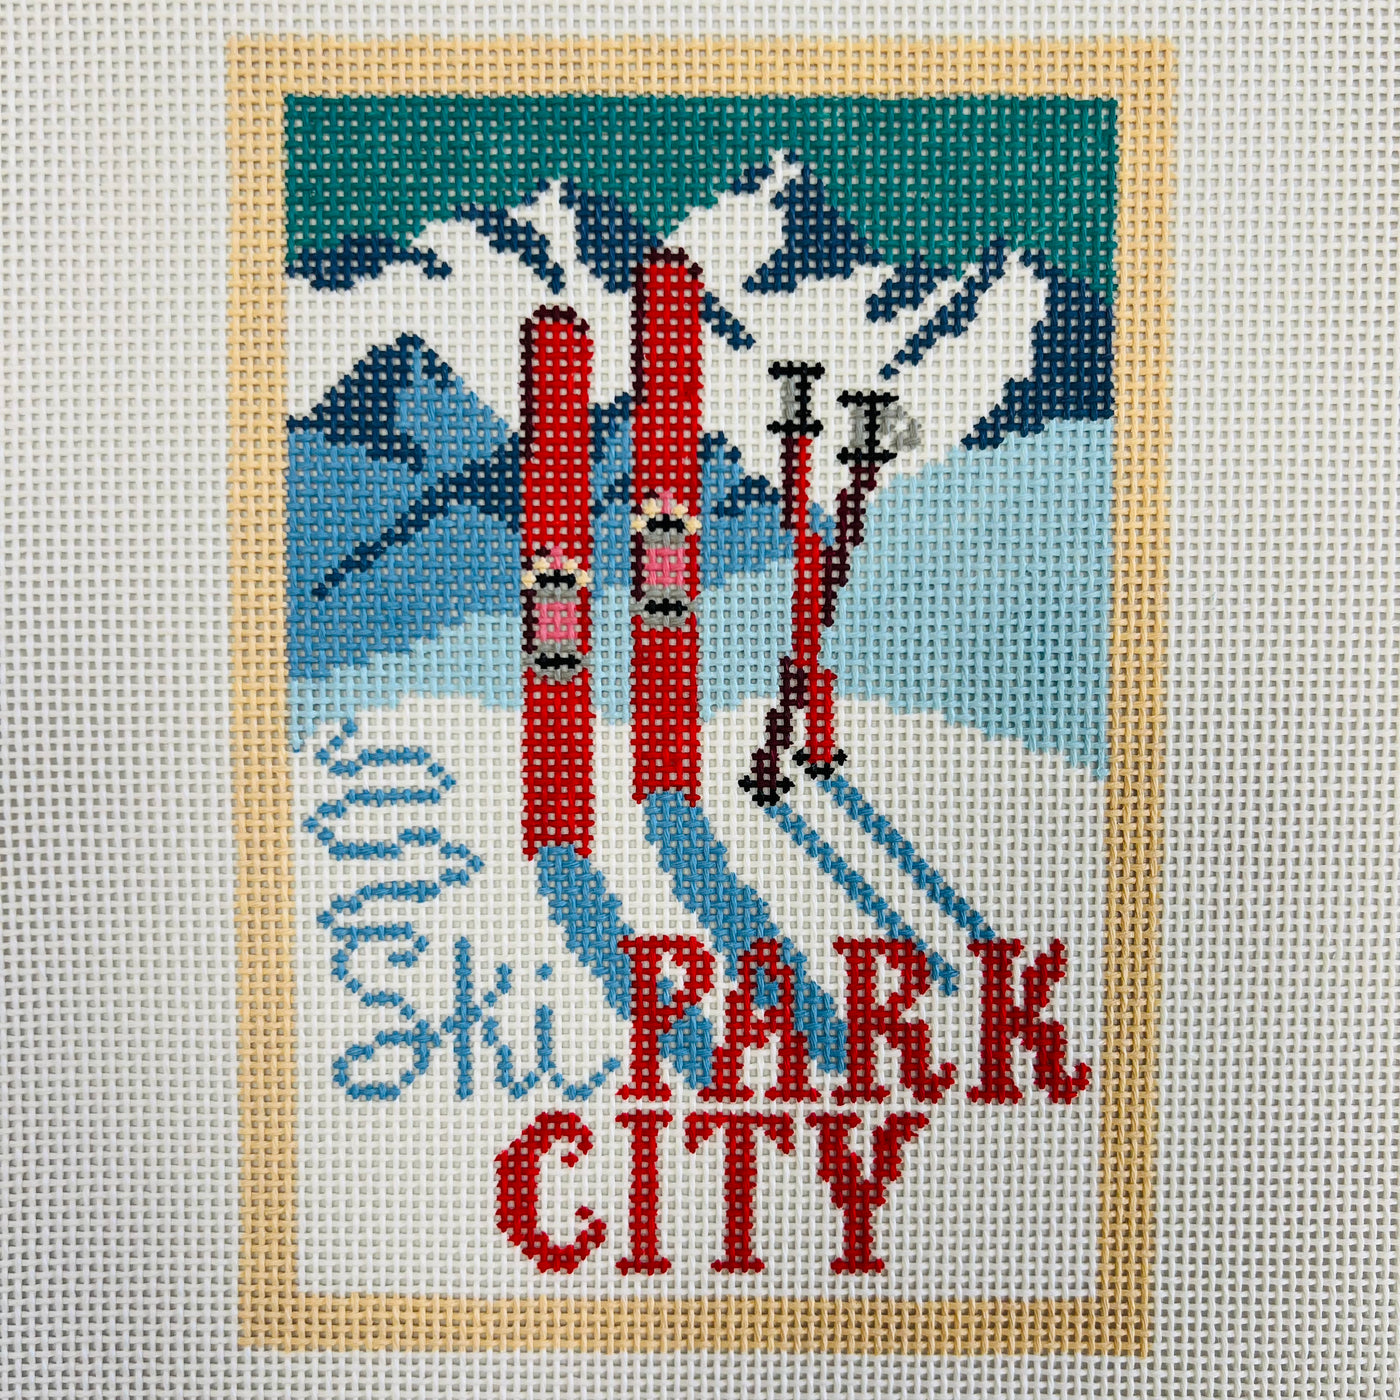 Park City Vintage Postcard Needlepoint Canvas